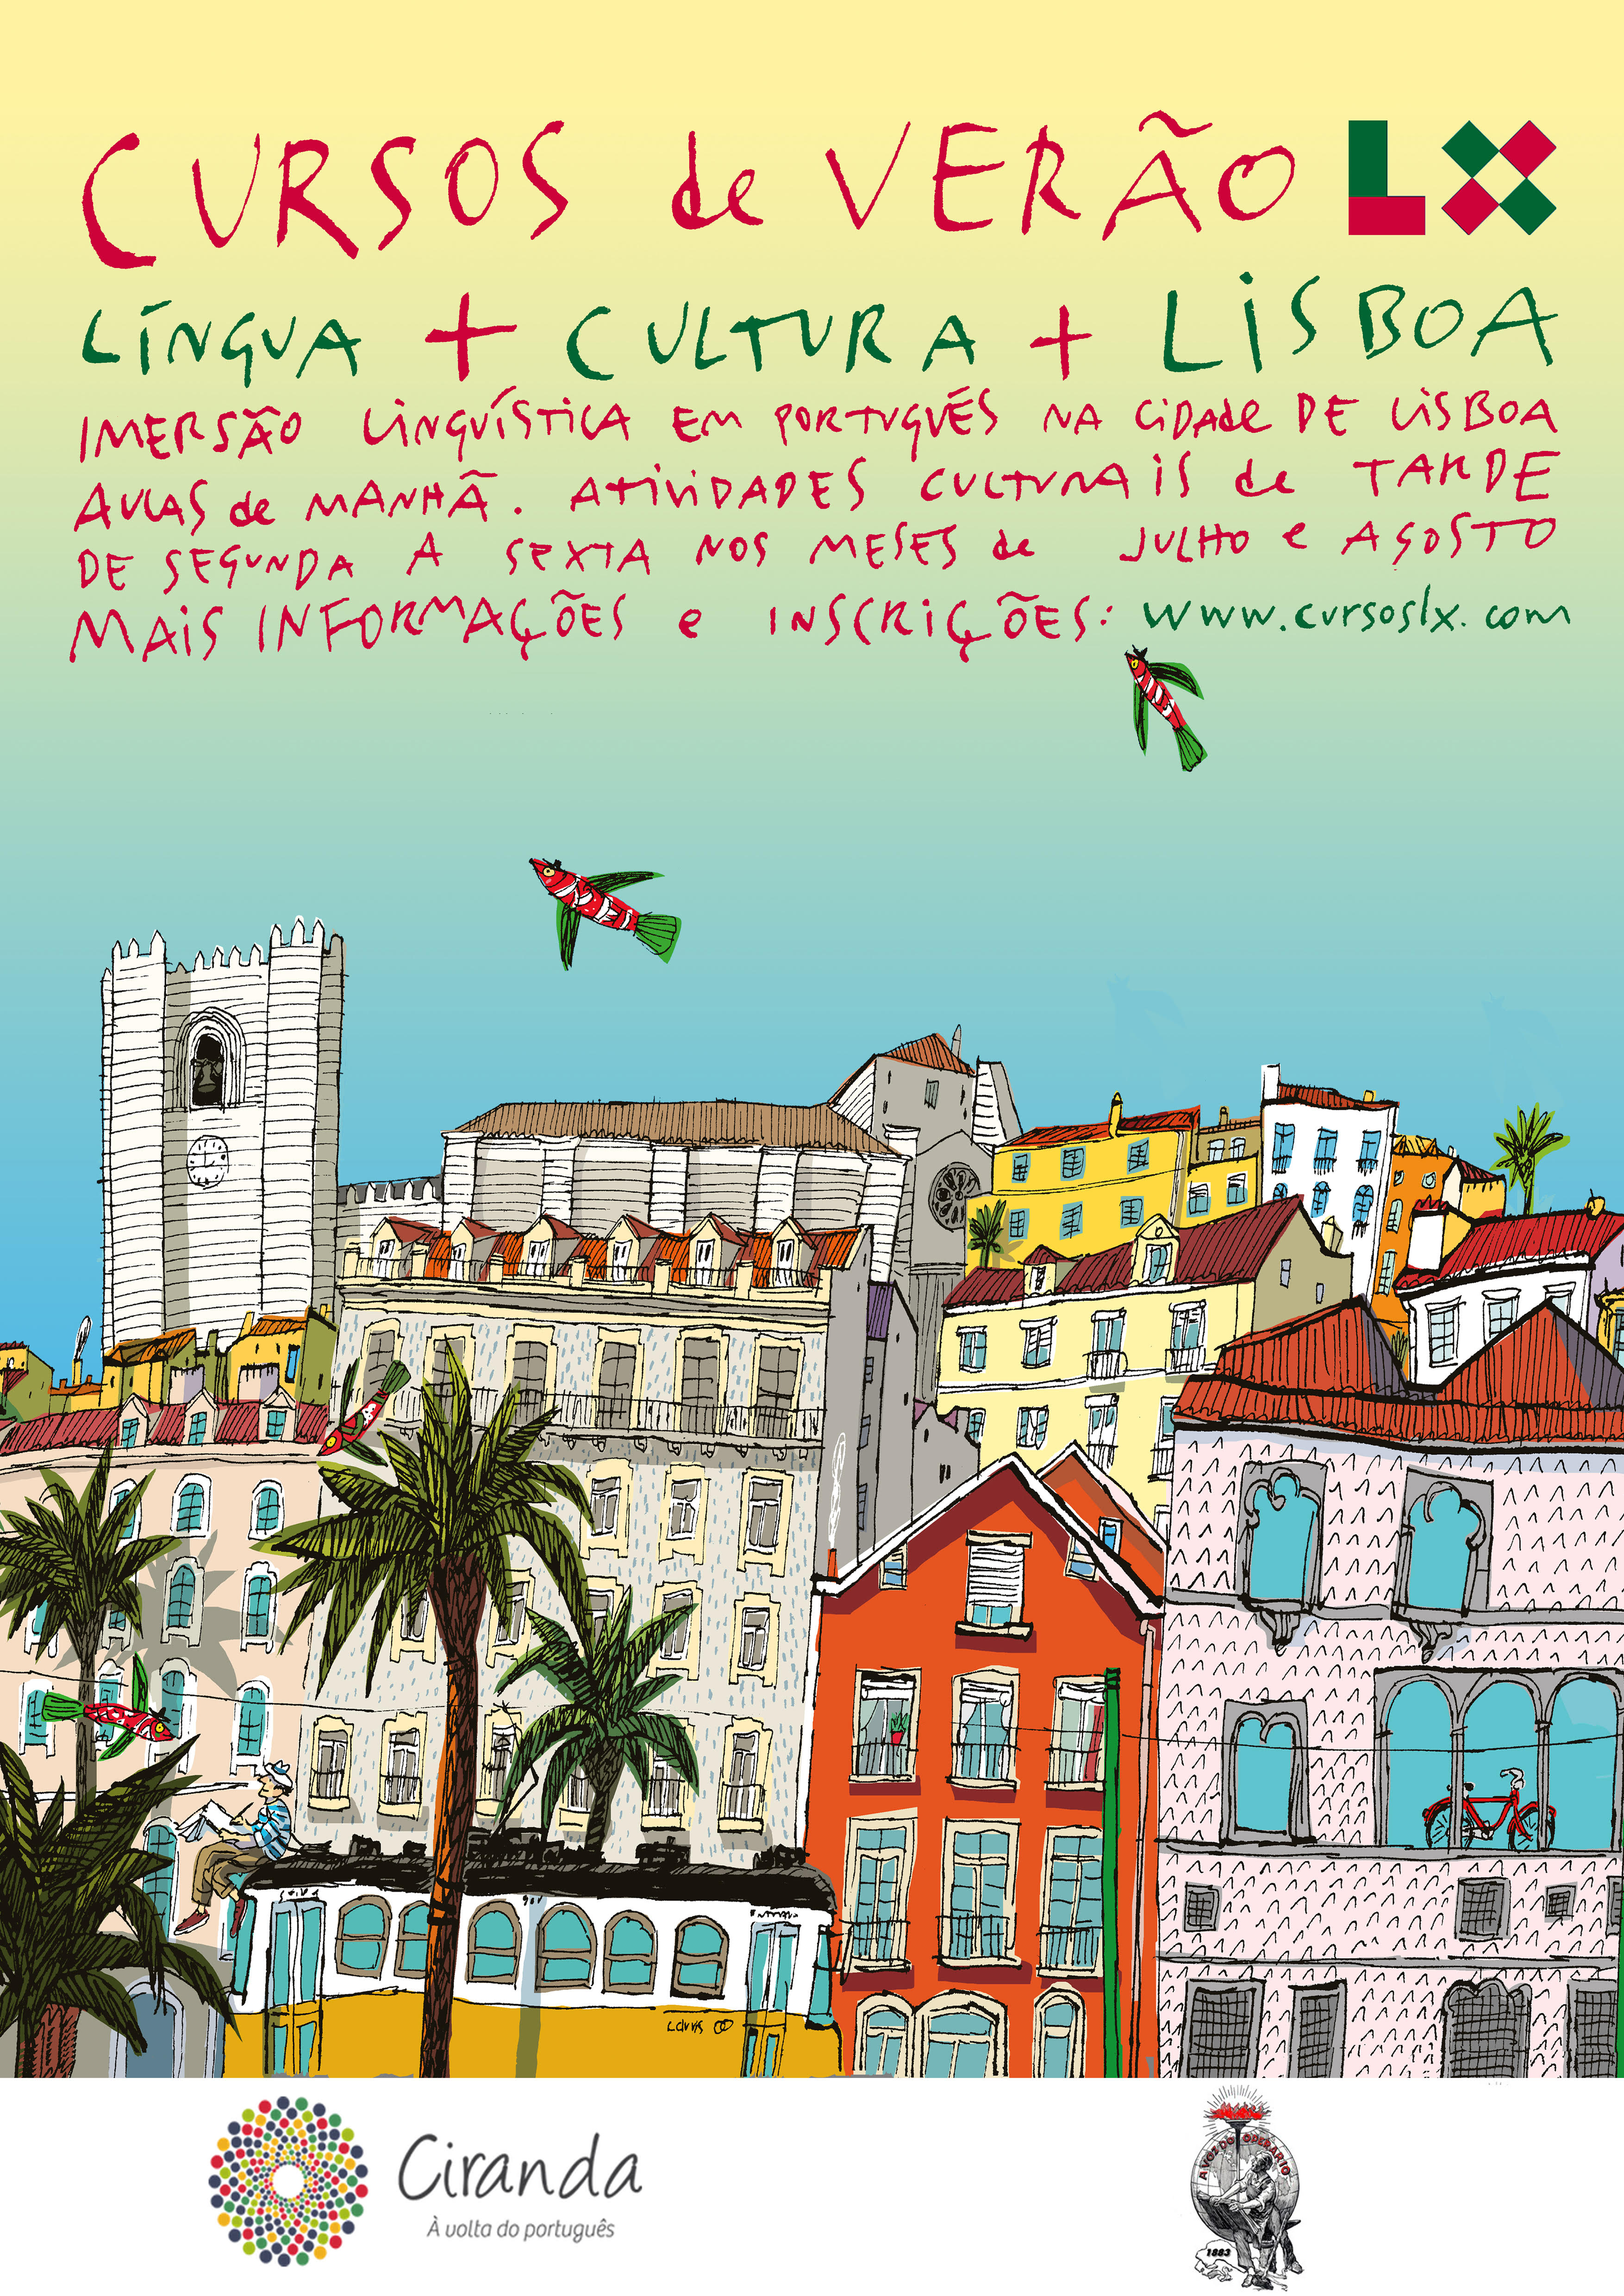 Juntar a língua, a cultura e Lisboa, via Santiago de Compostela